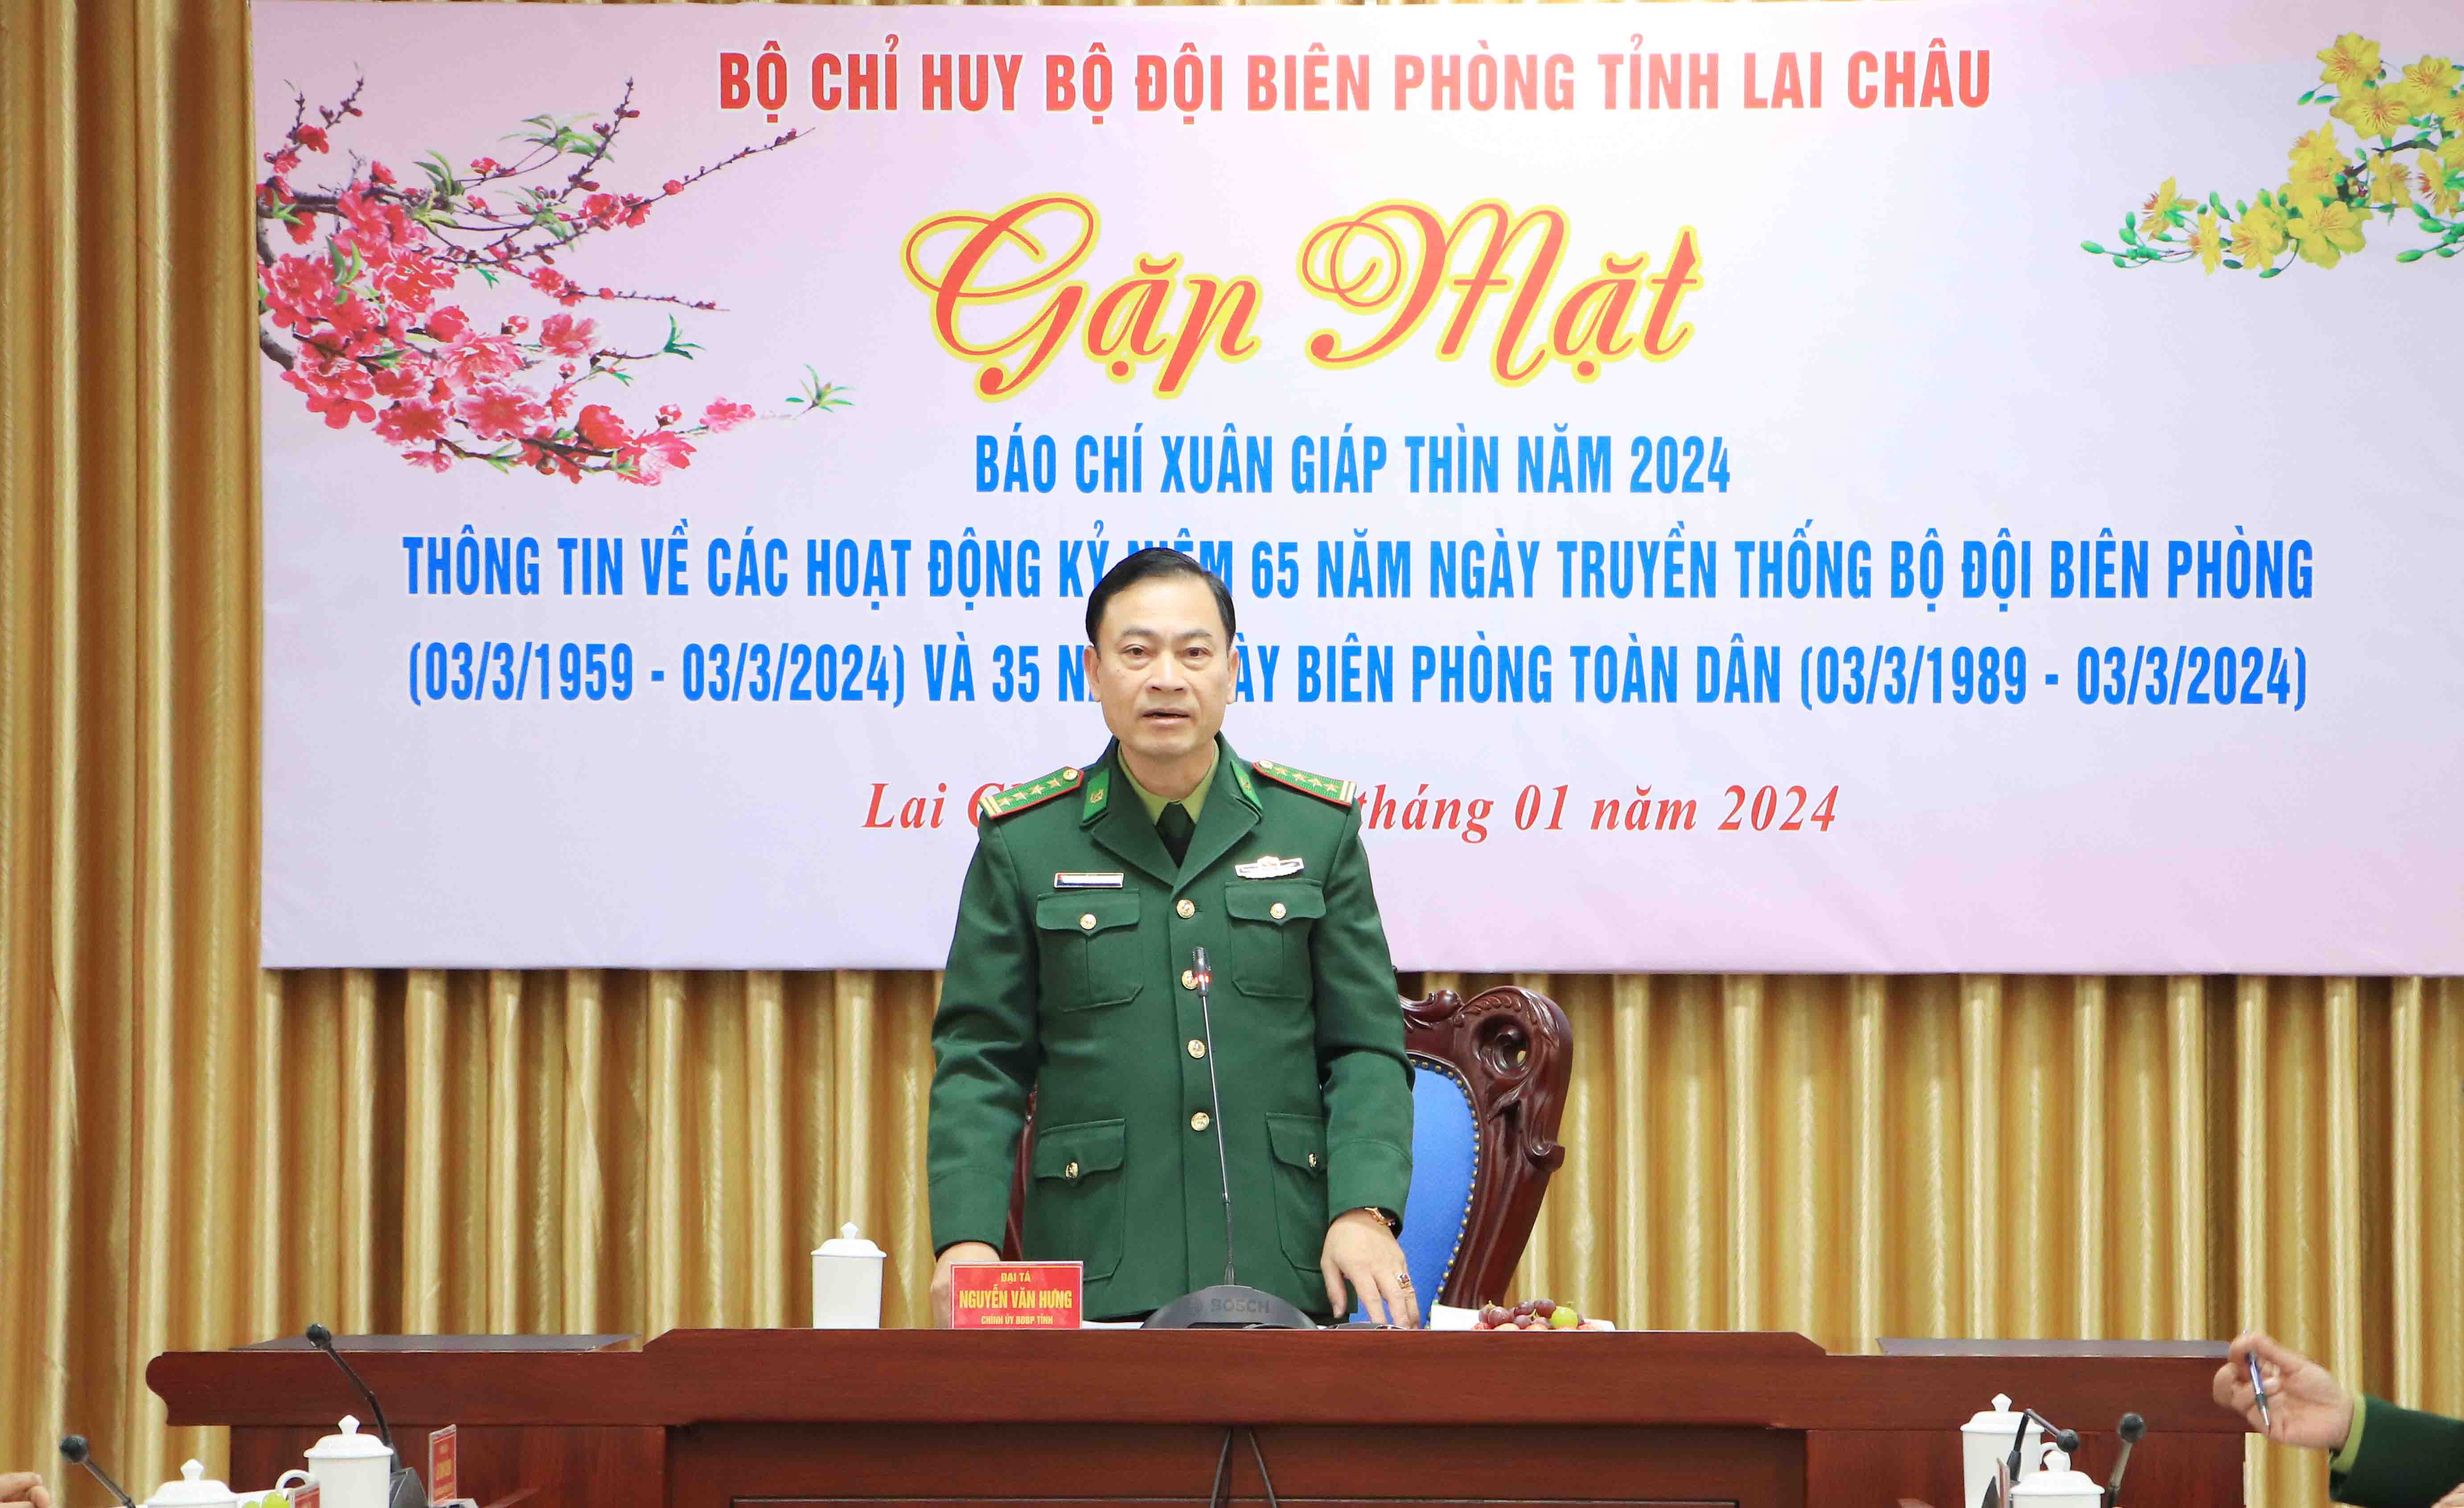 Đại tá Nguyễn Văn Hưng - Chính ủy Bộ Chỉ huy Bộ đội Biên phòng tỉnh chủ trì buổi Gặp mặt. 